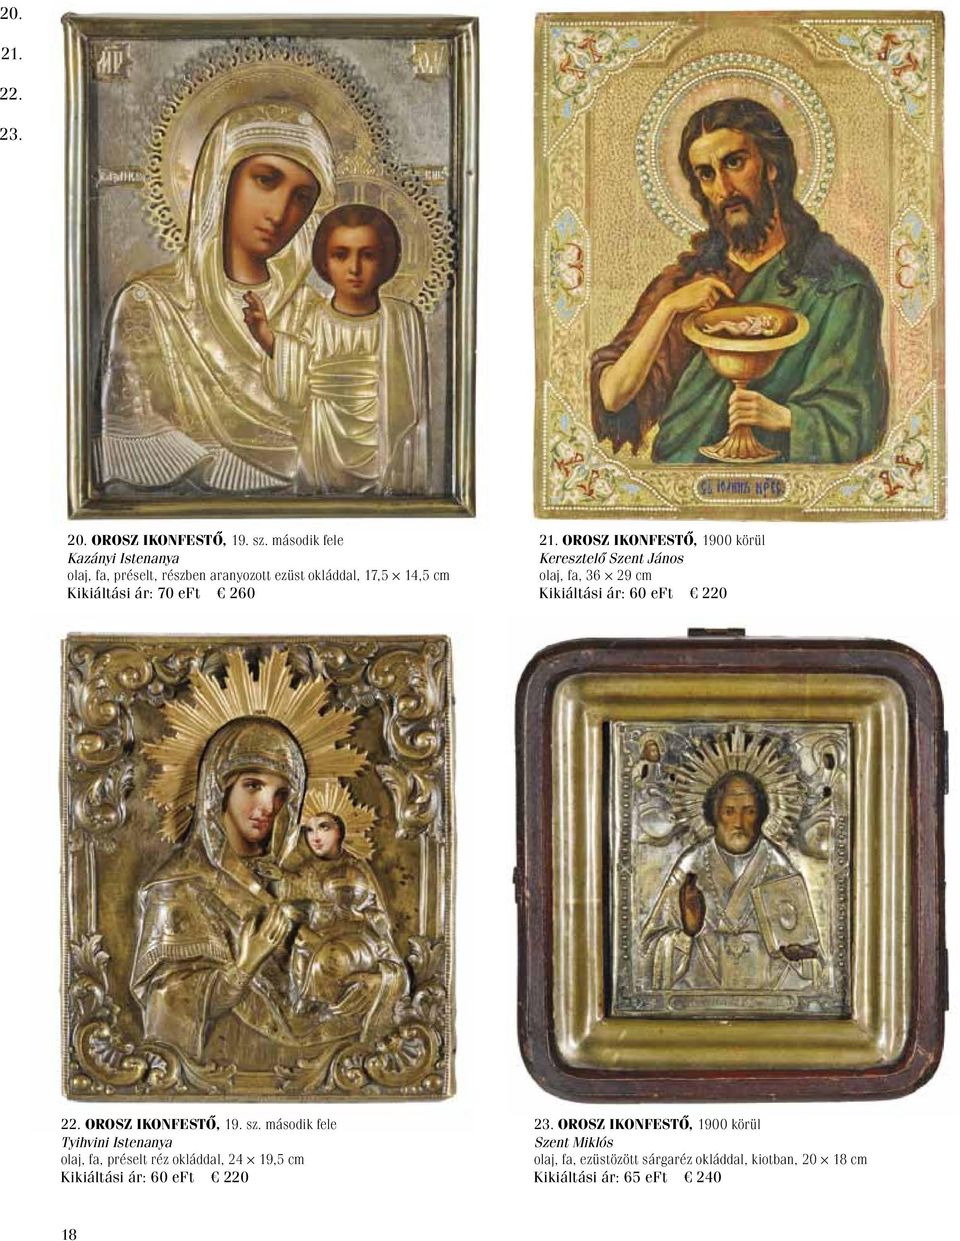 Orosz ikonfestő, 1900 körül Keresztelő Szent János olaj, fa, 36 29 cm Kikiáltási ár: 60 eft 220 22. Orosz ikonfestő, 19. sz.